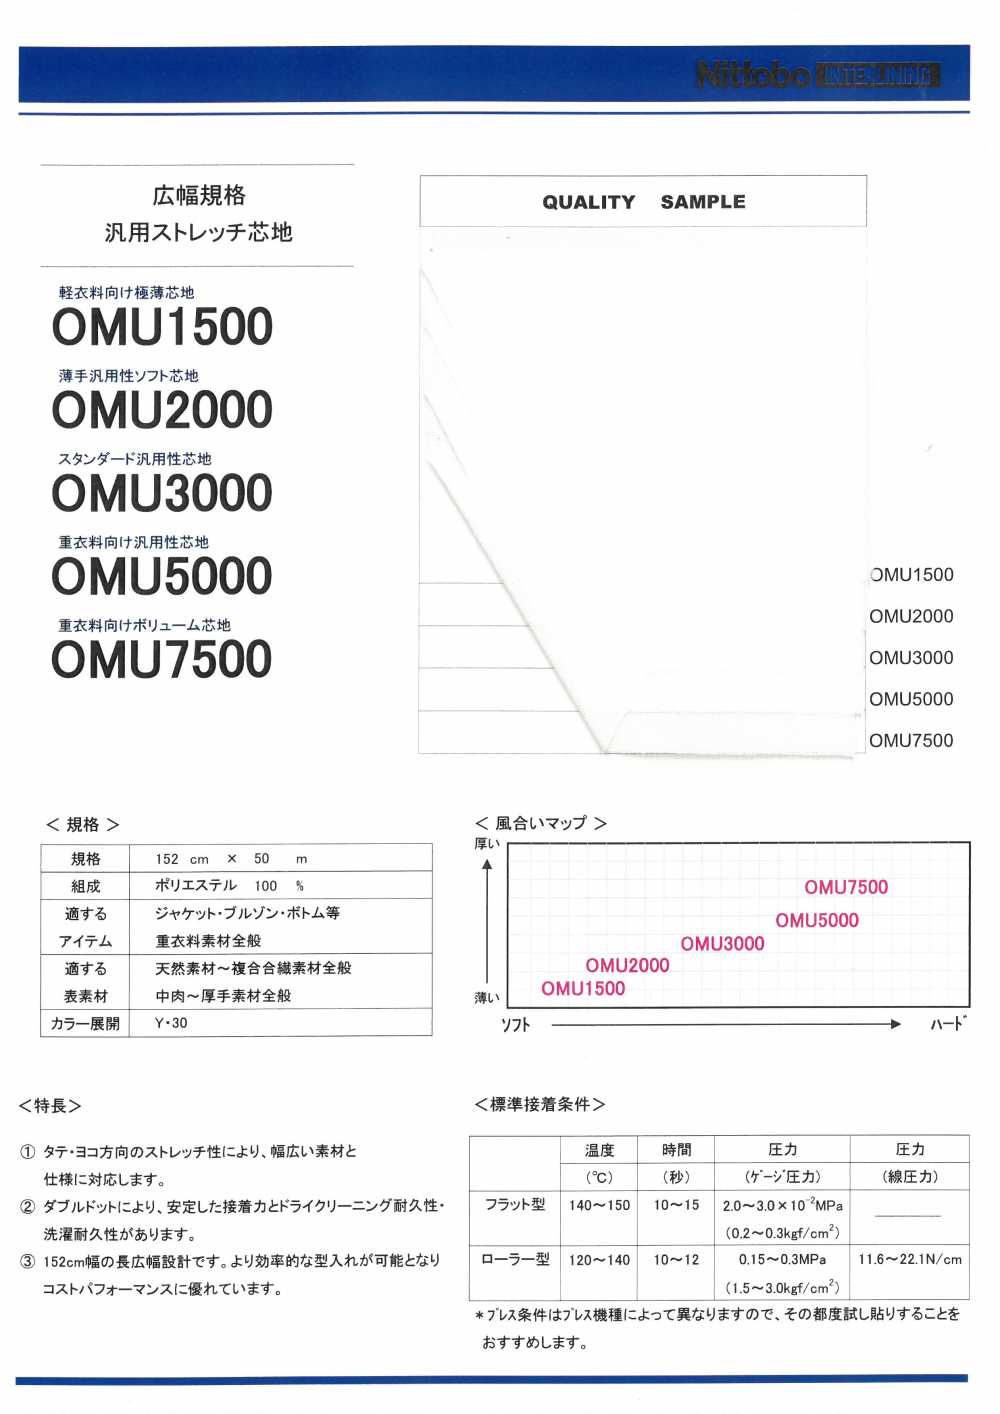 OMU1500 Ultradünne Einlage Für Leichte Kleidung Nittobo